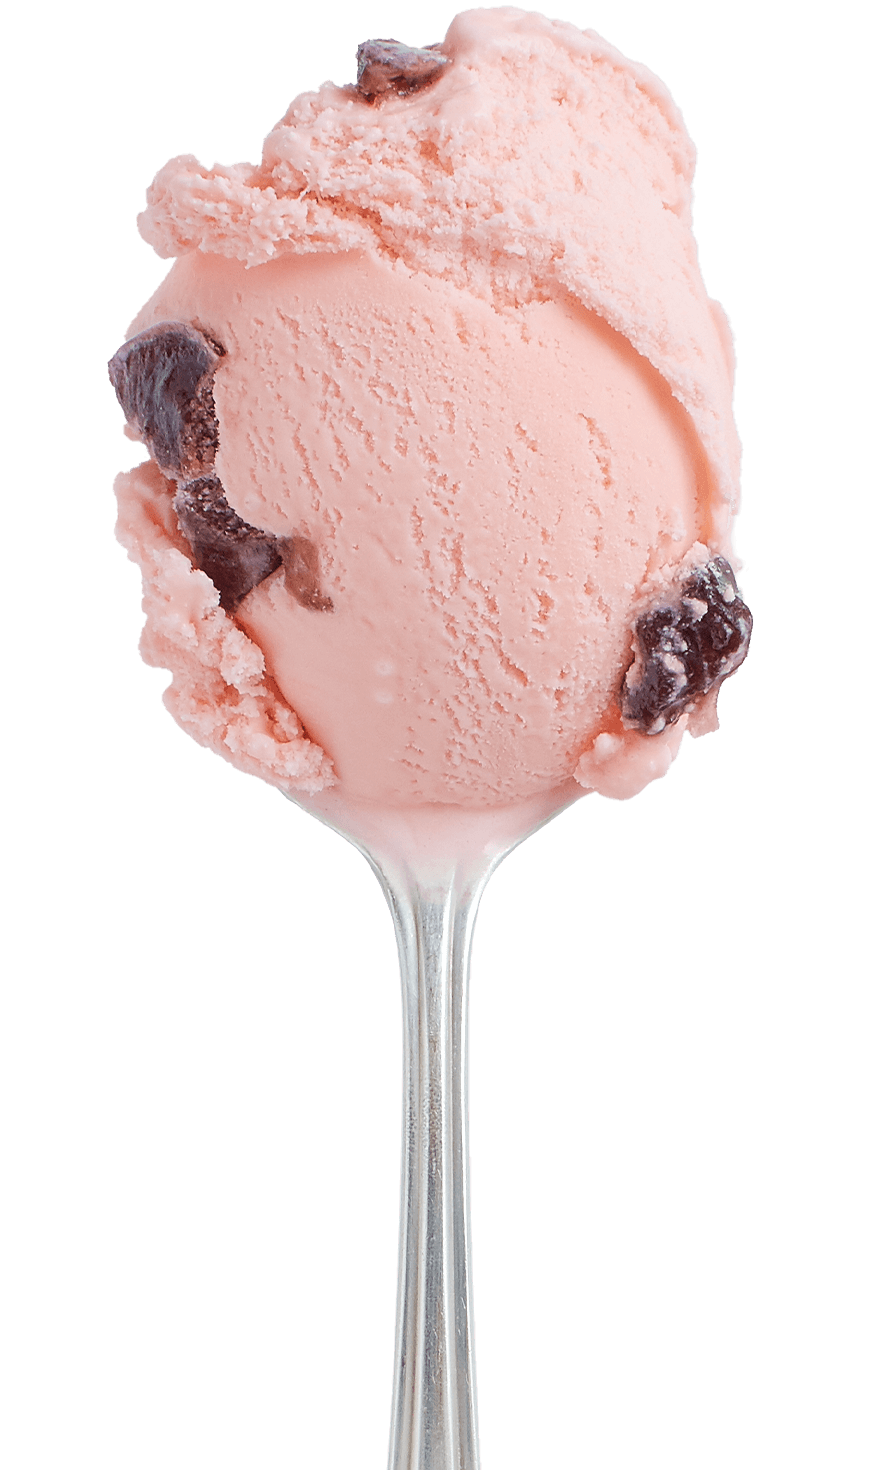 Black Cherry Hudsonville Ice Cream 4904